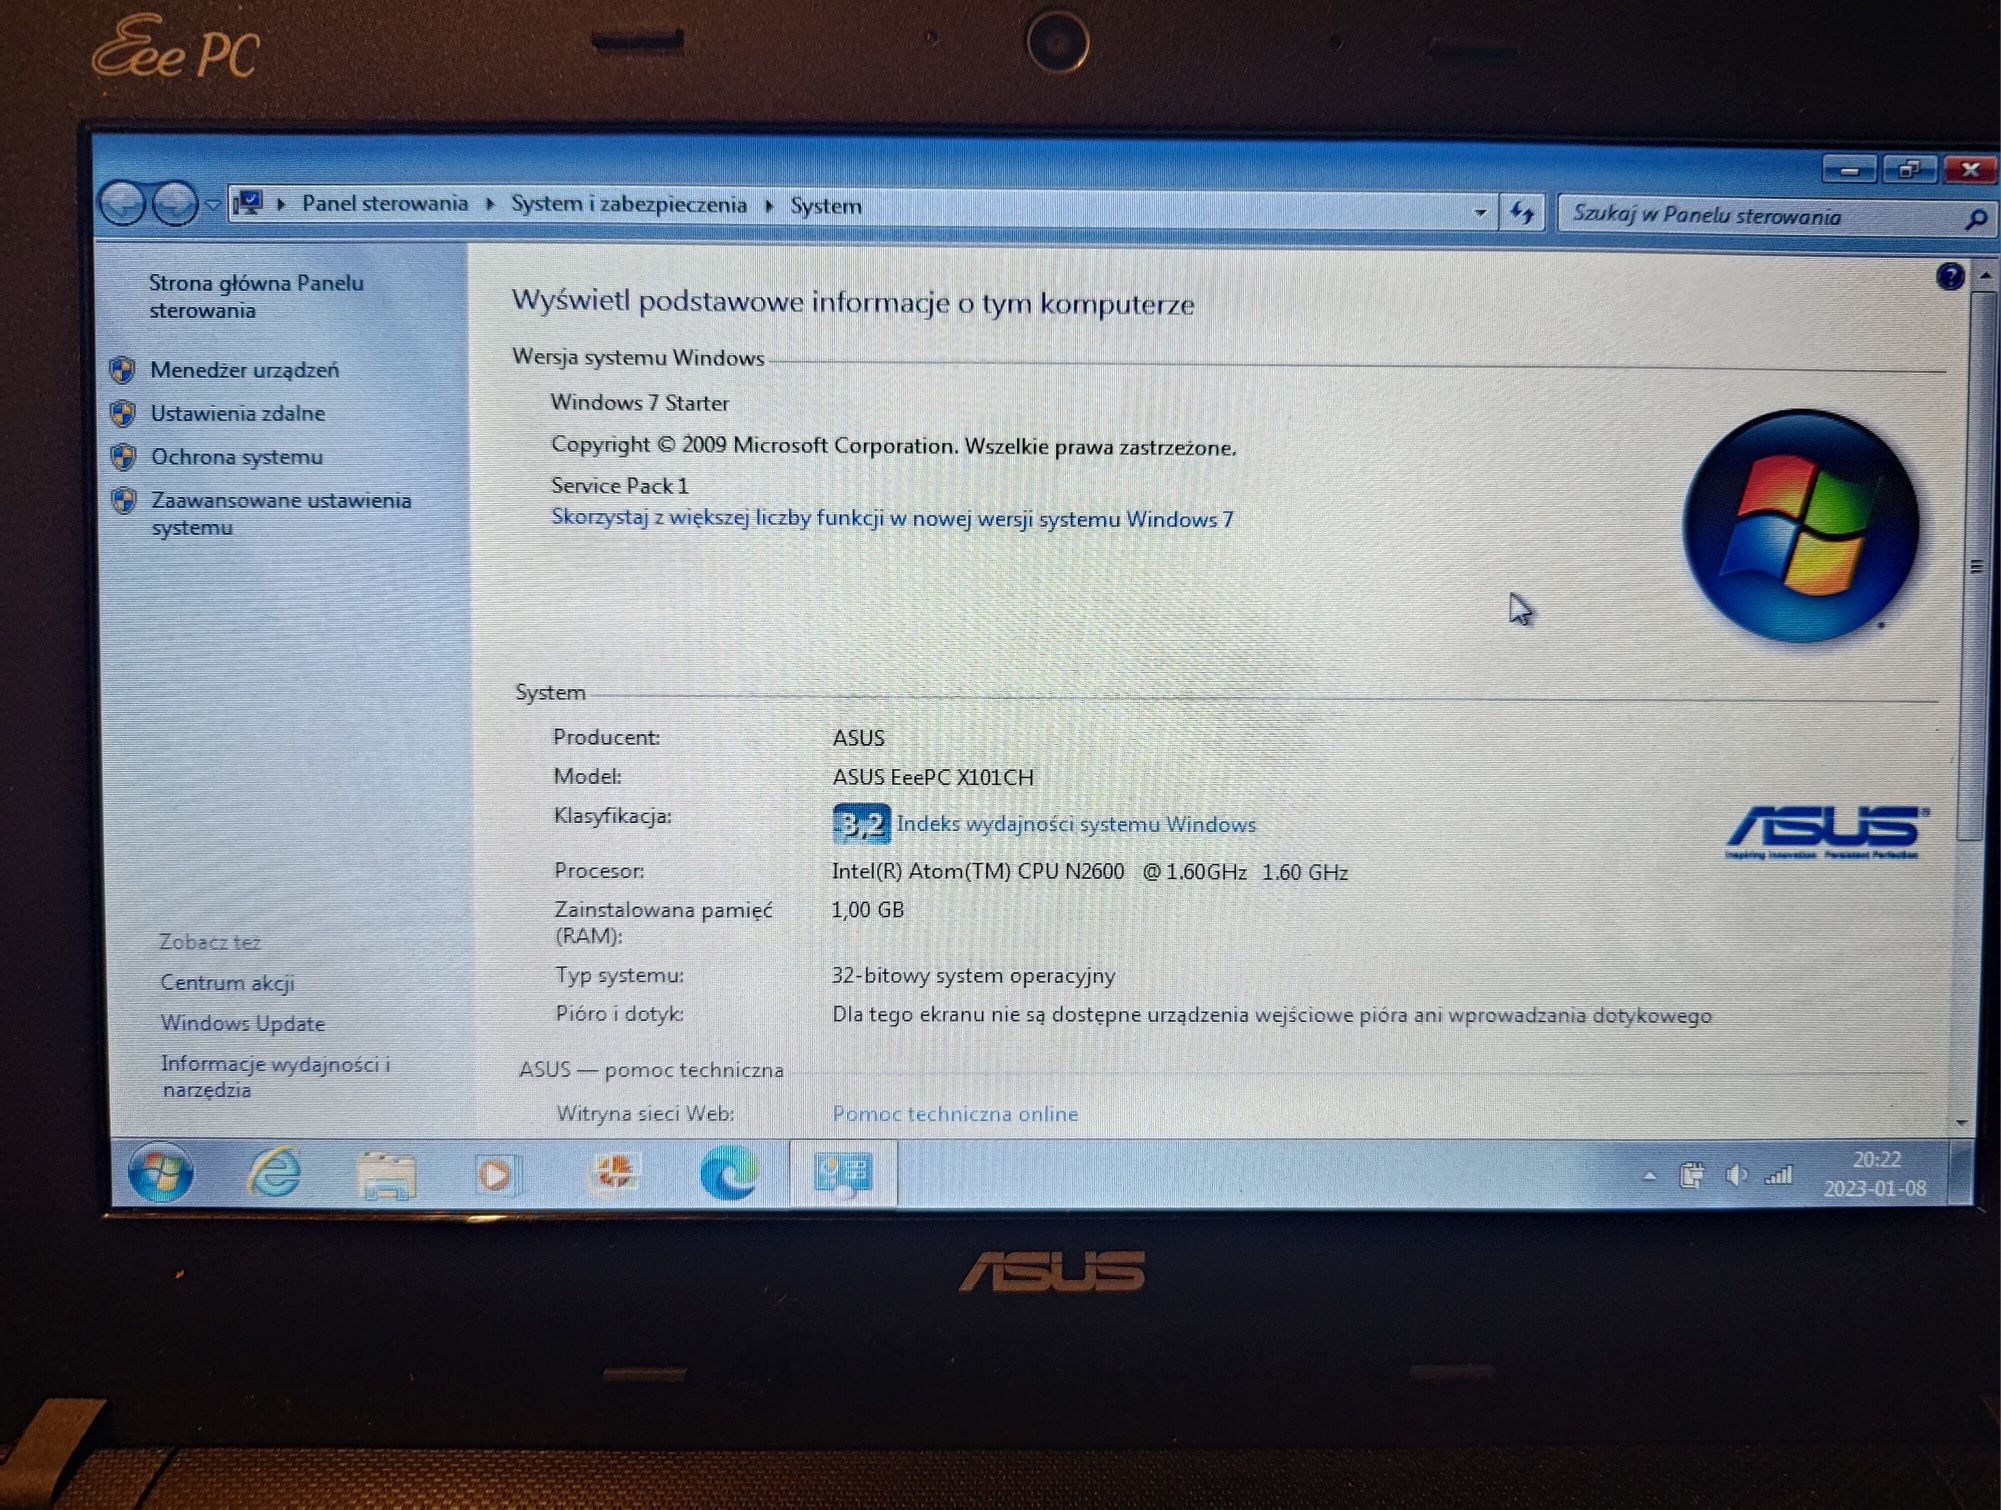 ASUS Eee PC X101CH 10"stan idealny 128GB SSD/Win7 Starter Łódź+gratisy